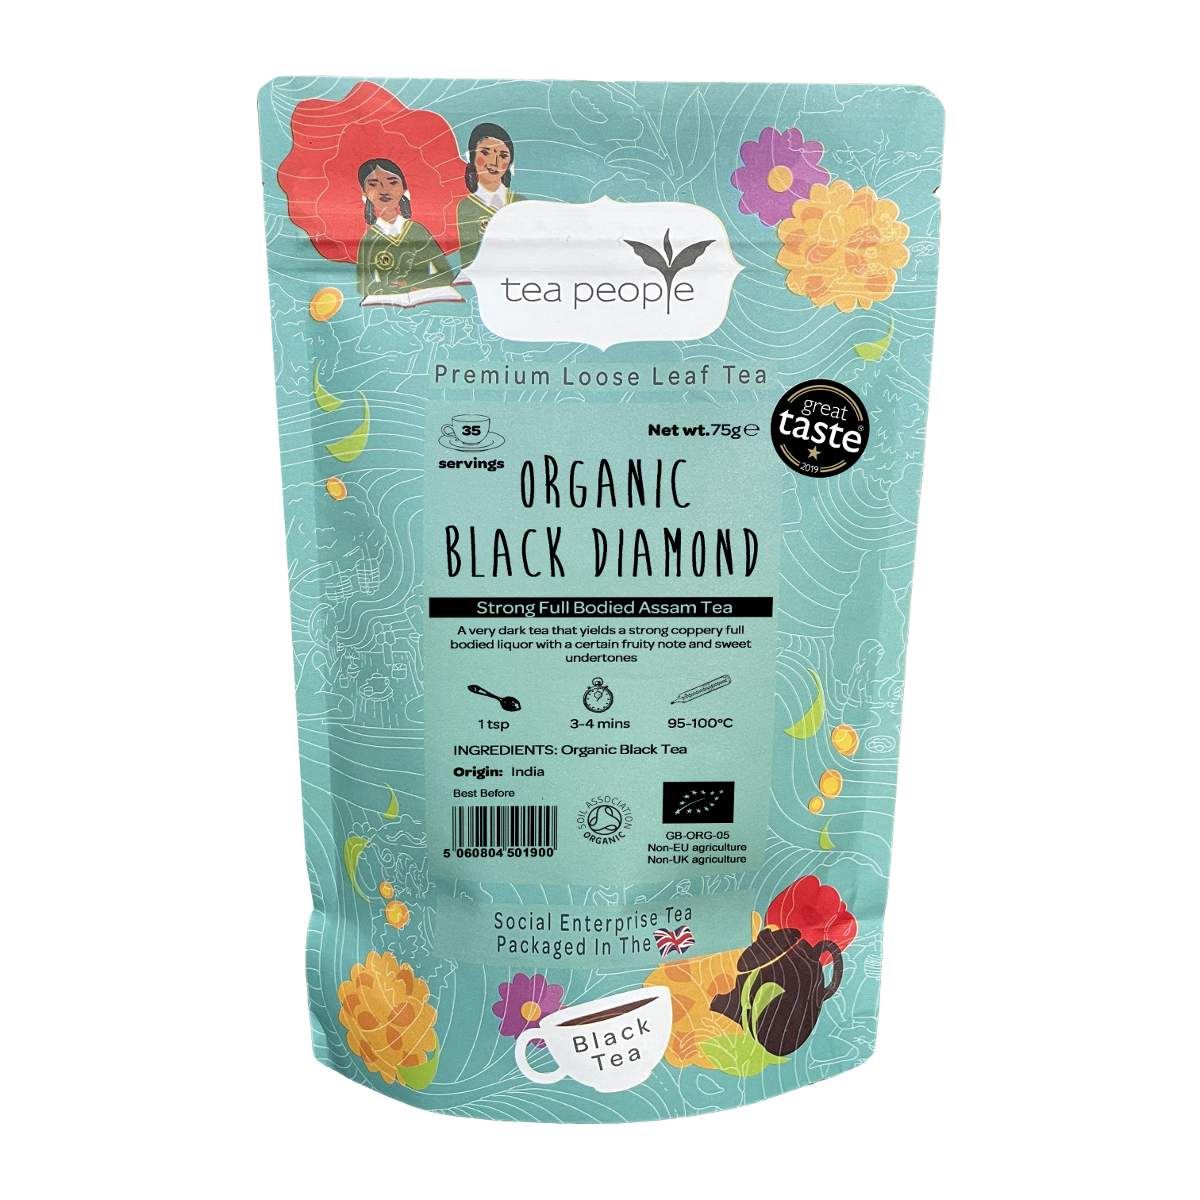 Organic Black Diamond - Loose Black Tea